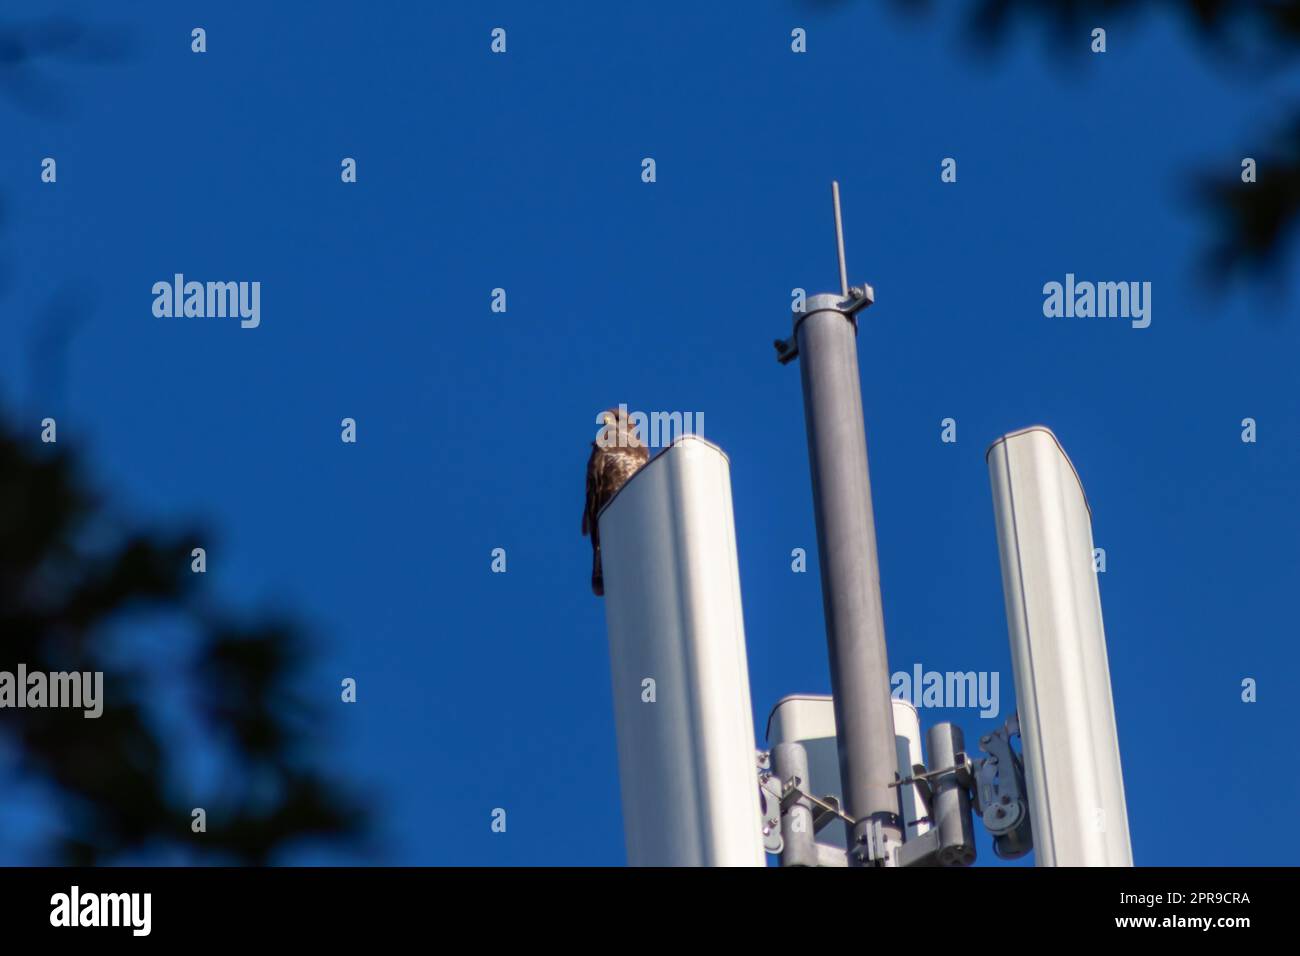 Ein aufmerksamer Falke sitzt auf einem Kommunikations- oder Antennenturm für Hochfrequenz-Internet mit 4G und 5G und hält Ausschau nach Beute mit klarem blauem Hintergrund, die auf der Jagd nach fliegenden Raptoren in der Stadt ist Stockfoto